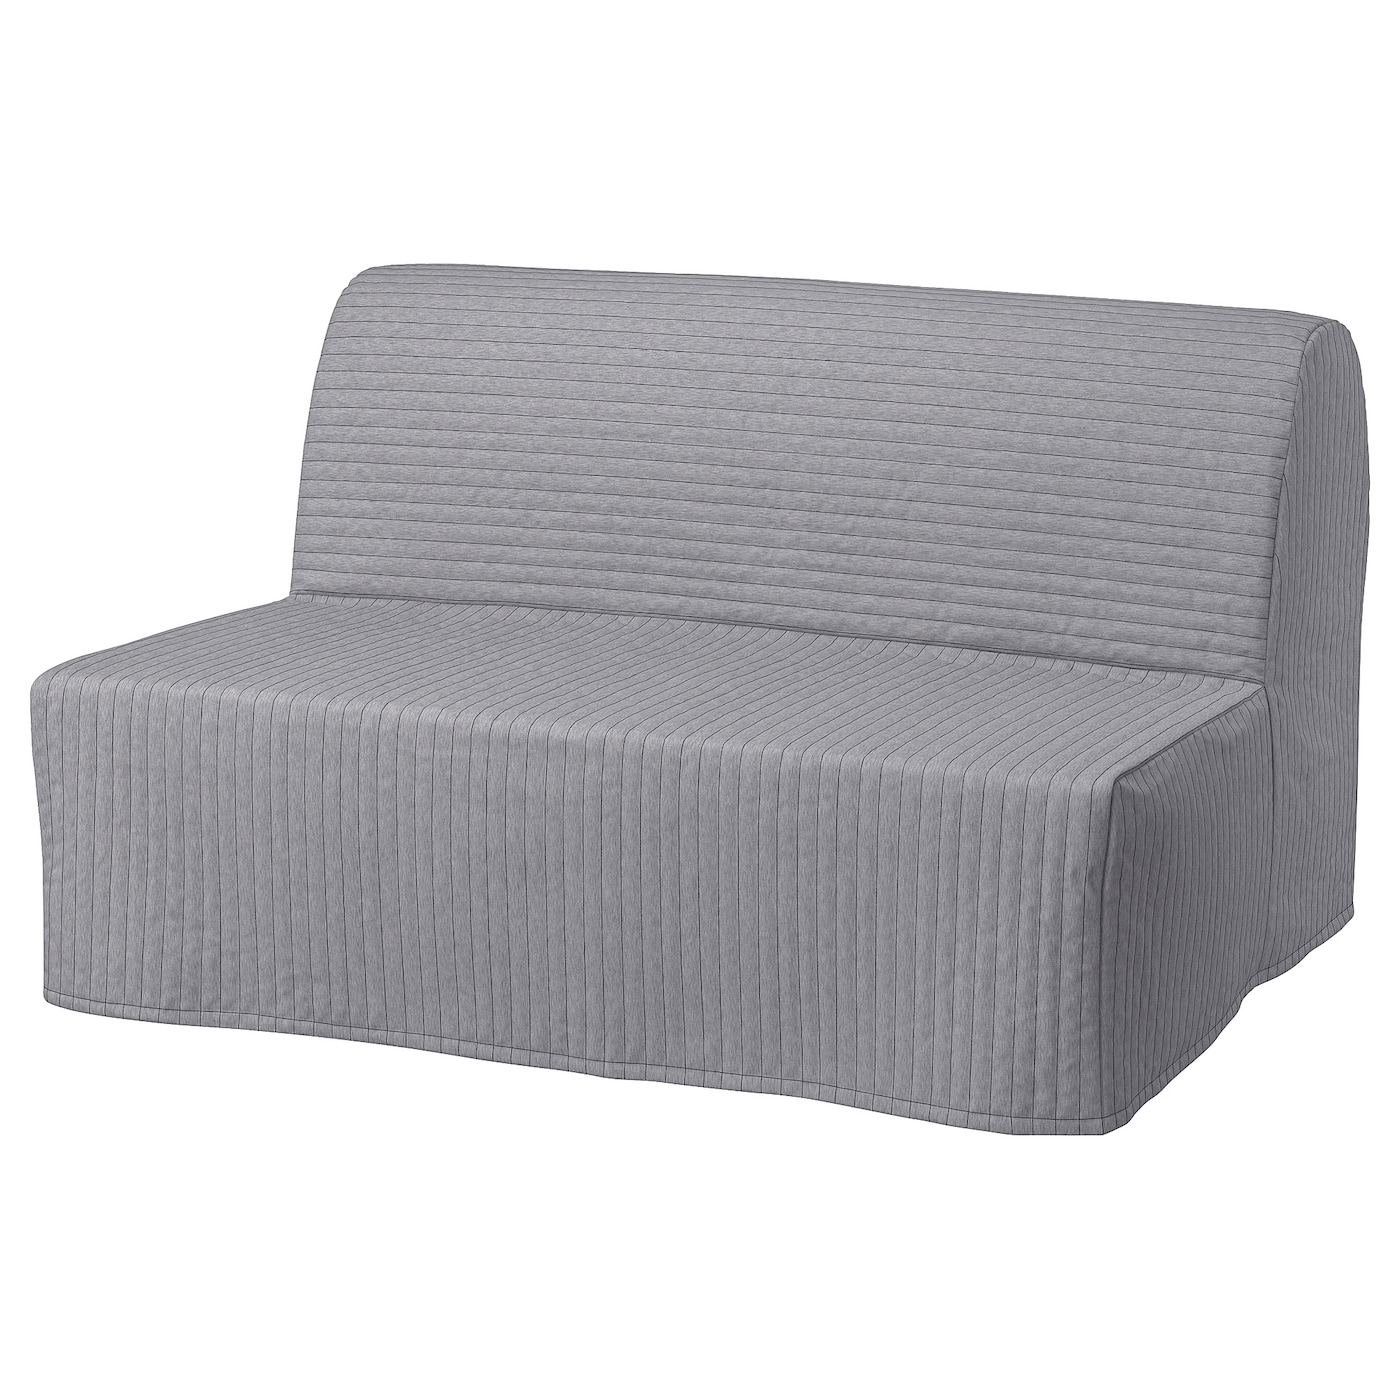 мультяшный матрас ленивый диван кровать подходит для детей татами маты креативный маленький диван кровать стул современная мебель для ЛИКСЕЛЕ МУРБО 2 раскладных дивана-кровати, Книса светло-серый LYCKSELE MURBO IKEA